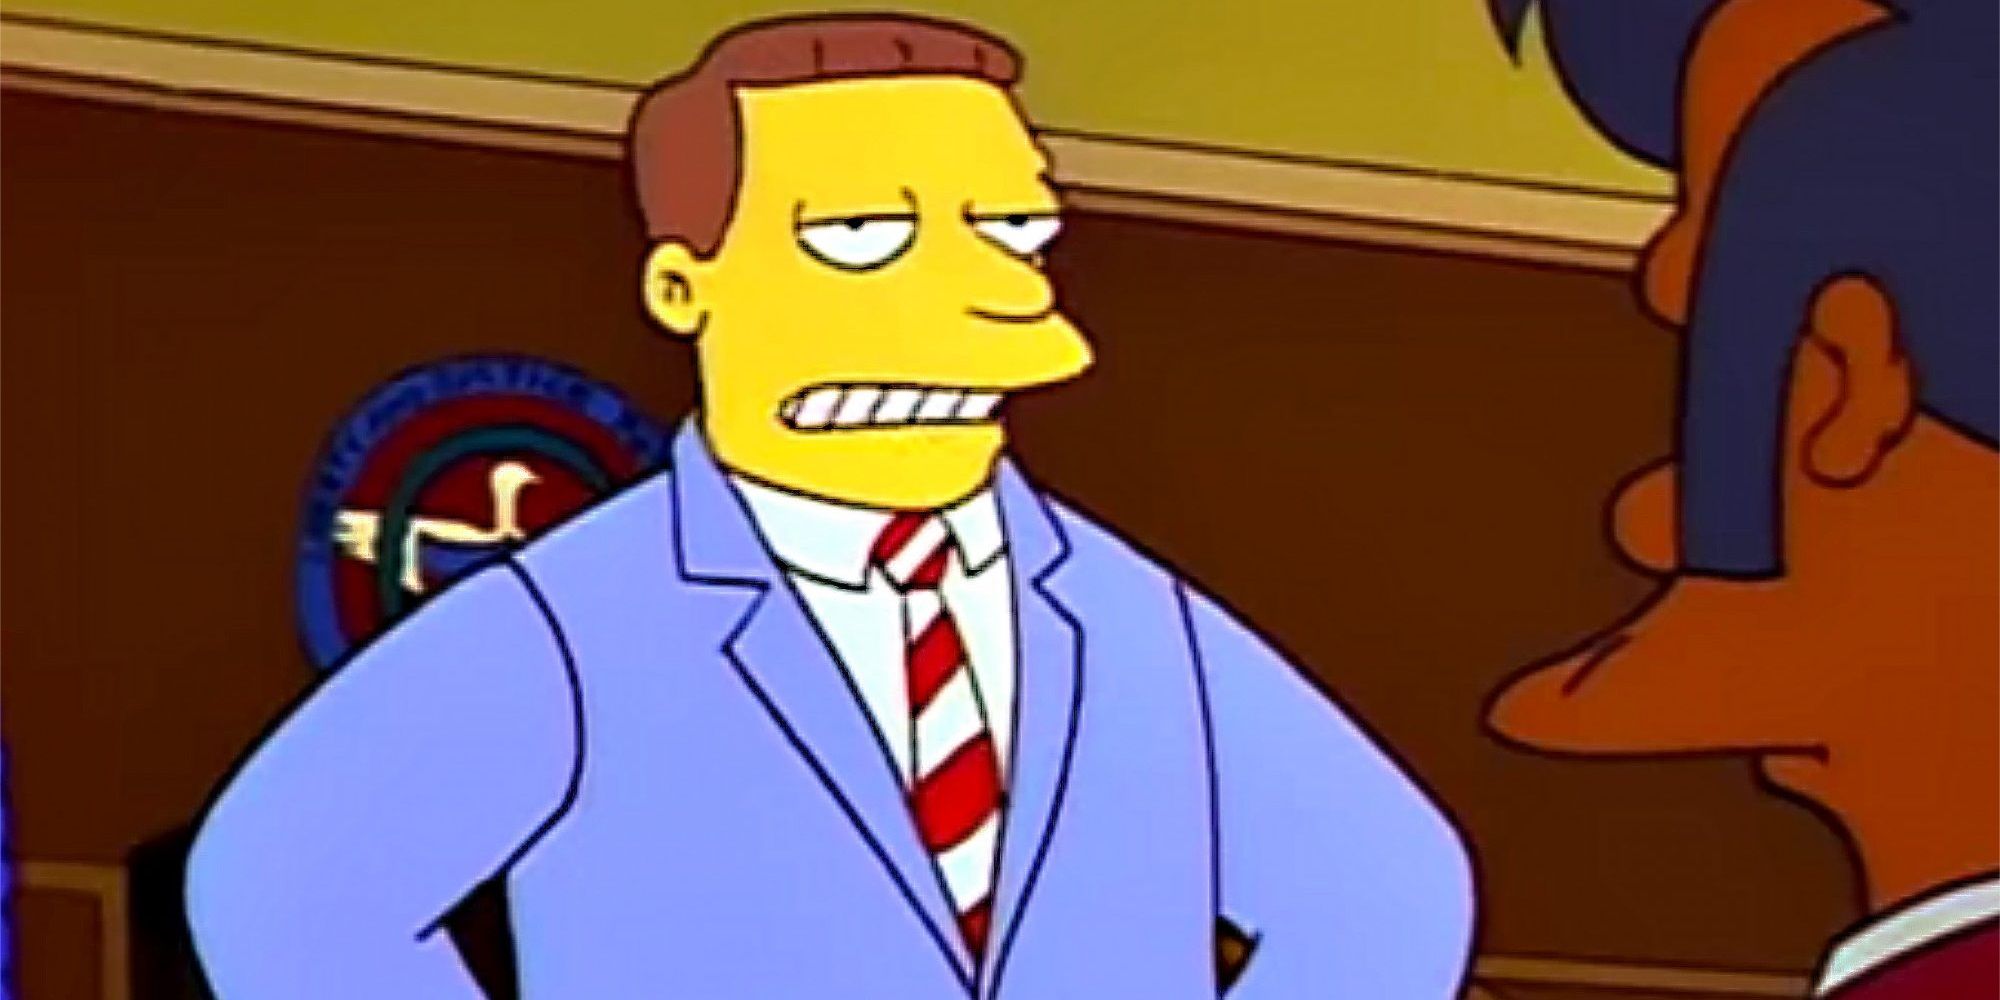 Lionel Hutz au tribunal dans Les Simpson